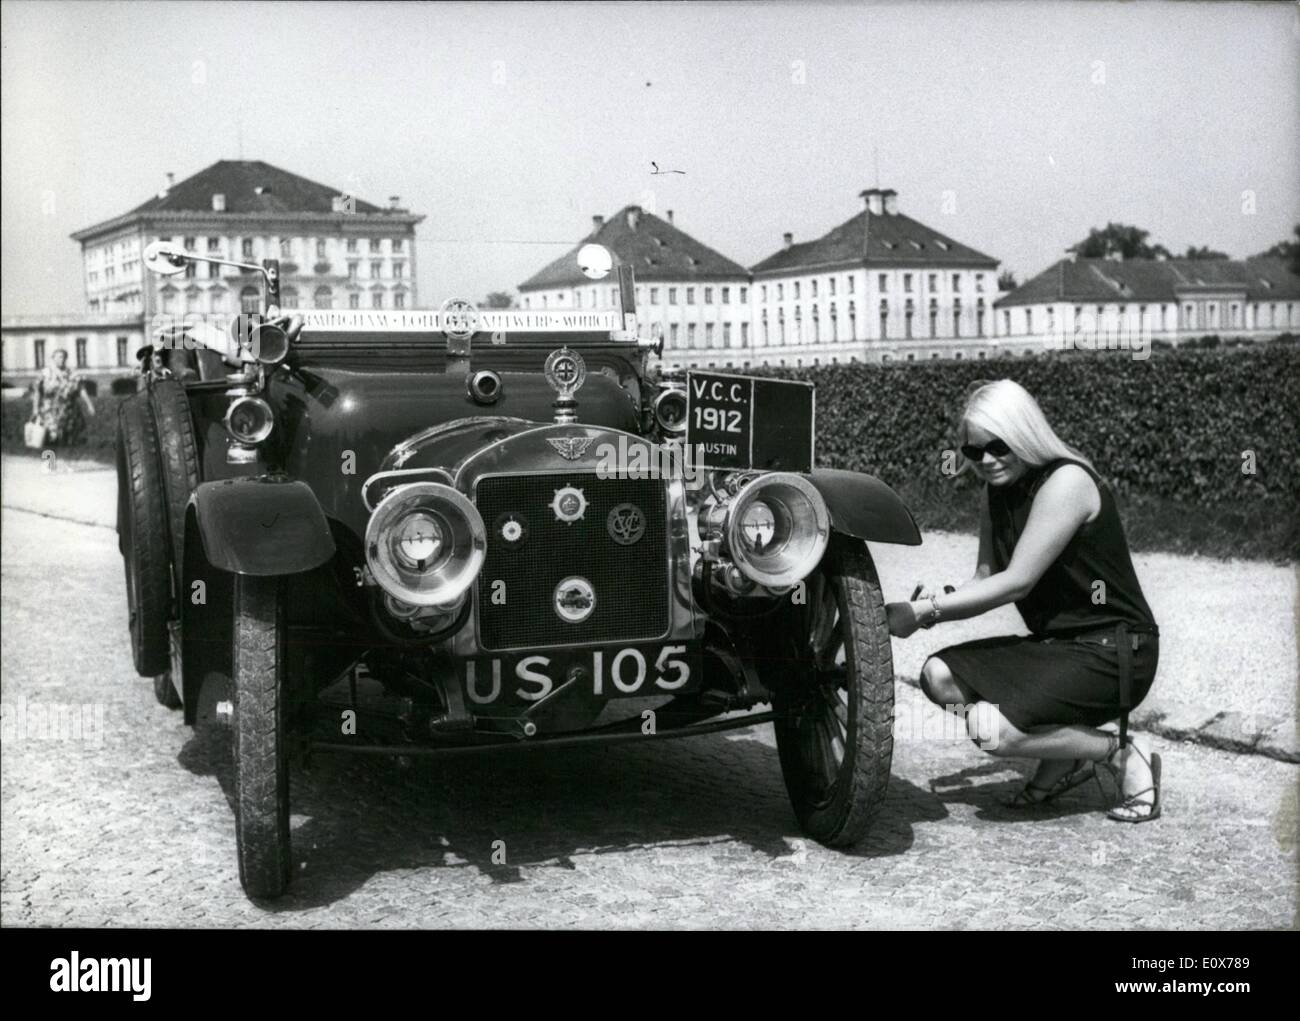 Lug. 07, 1965 - Più di 500 old-timer da 13 diversi paesi prendono parte a una automobile storico-processione su luglio 18th, 1965 a Monaco di Baviera. Questo festoso corteo è disposto in connessione con la prima esposizione mondiale del settore dei trasporti e delle comunicazioni. Tutti i tipi di old-timer sono presenti, la più antica vettura, il ''Benz" il primo ''Opel'', di maggior successo carof il mondo, ''Ford T 1912, A.S.O. La foto mostra un ''Austin'' dell'anno 1912 che è preparato per la processione da una giovane ragazza nella corte del castello di Nymphenburg. Foto Stock